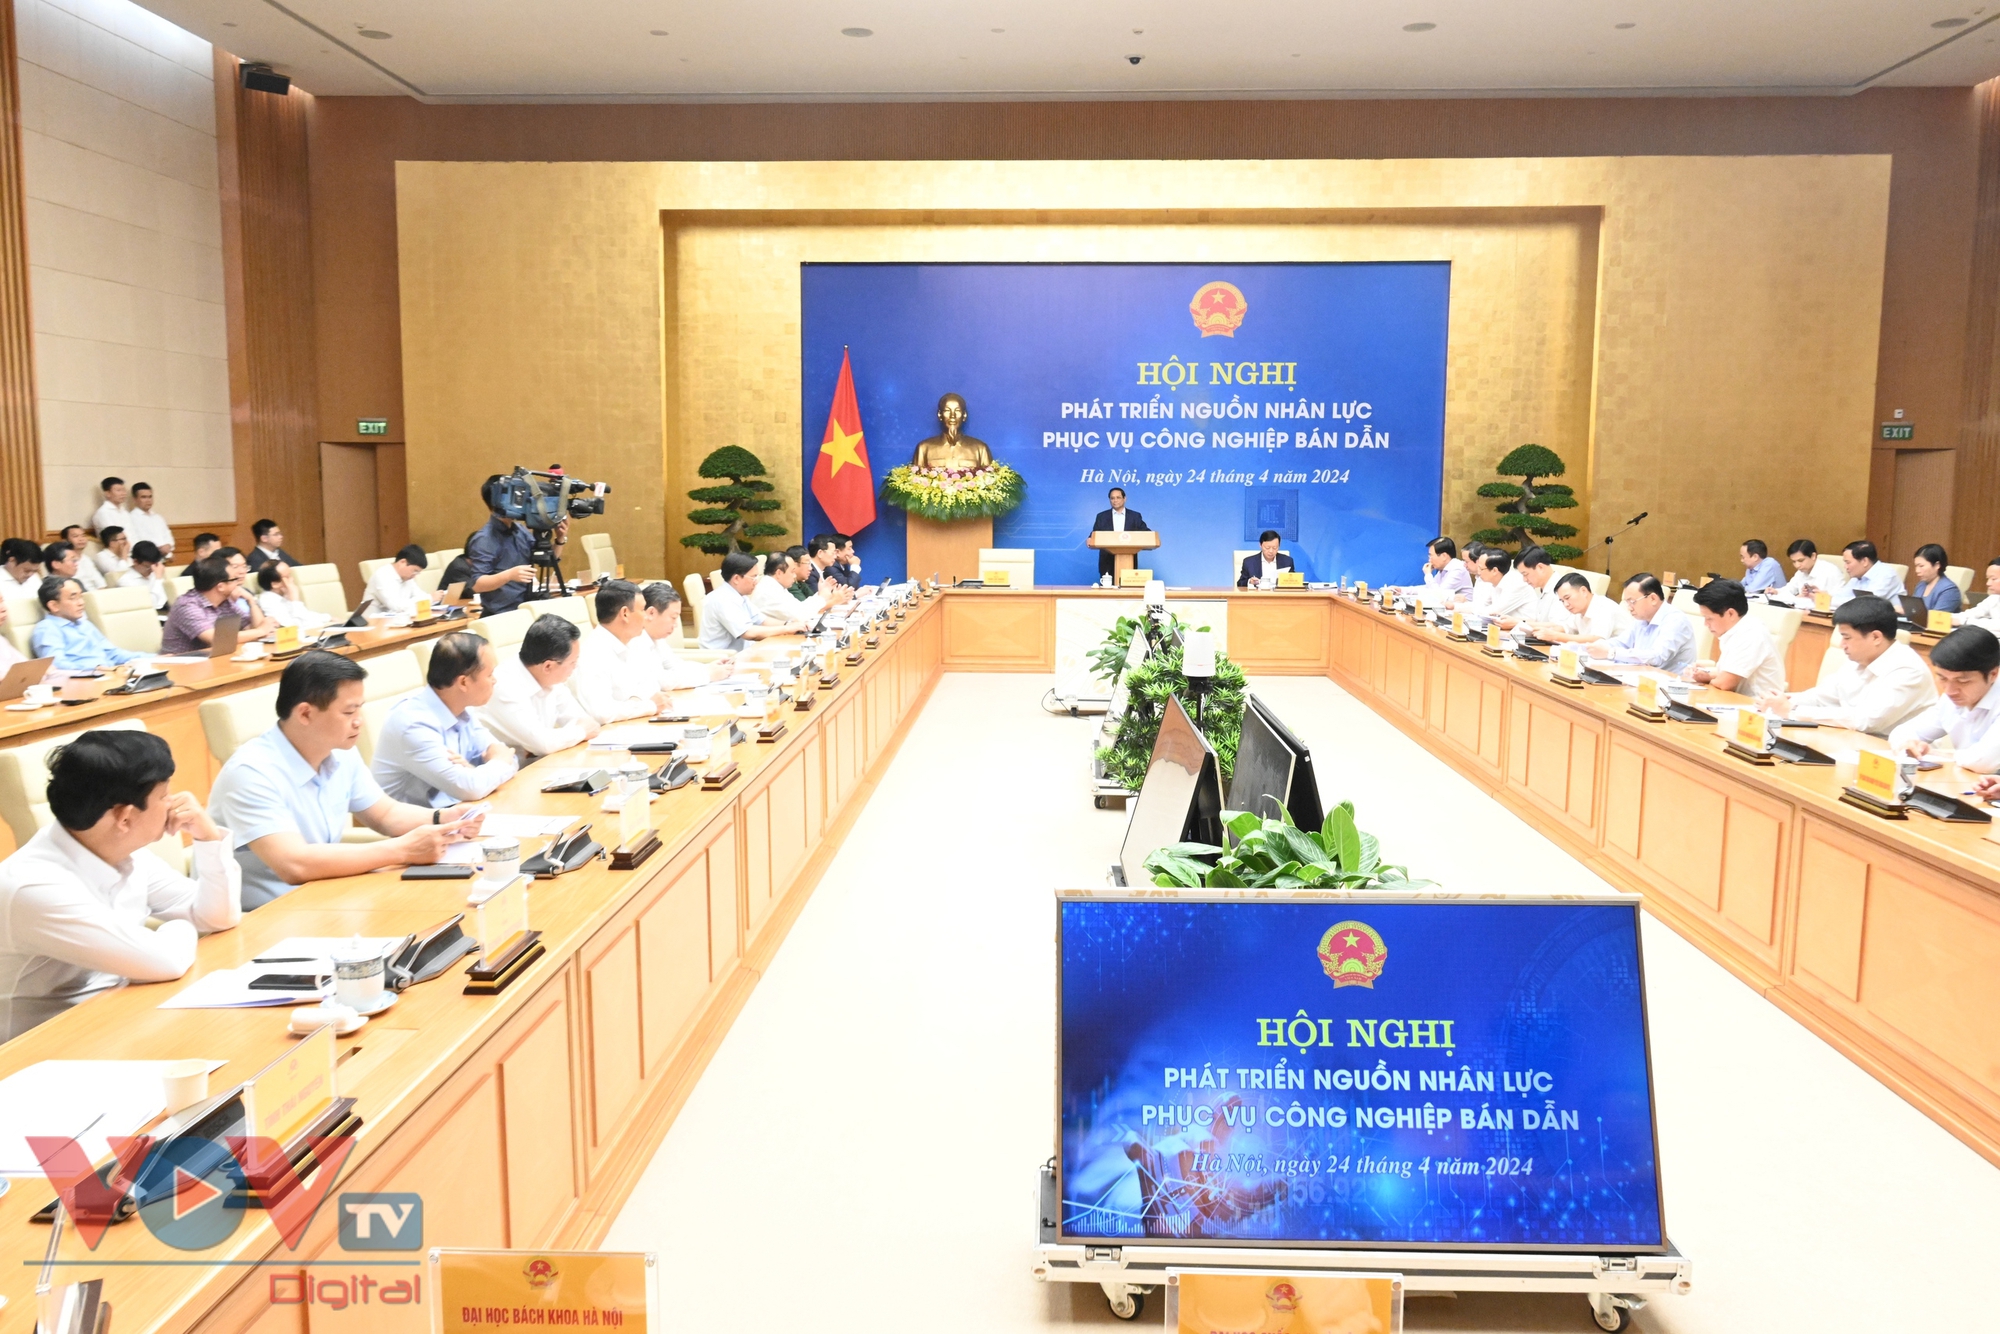 Thủ tướng Phạm Minh Chính chủ trì Hội nghị về phát triển nguồn nhân lực phục vụ công nghiệp bán dẫn- Ảnh 1.